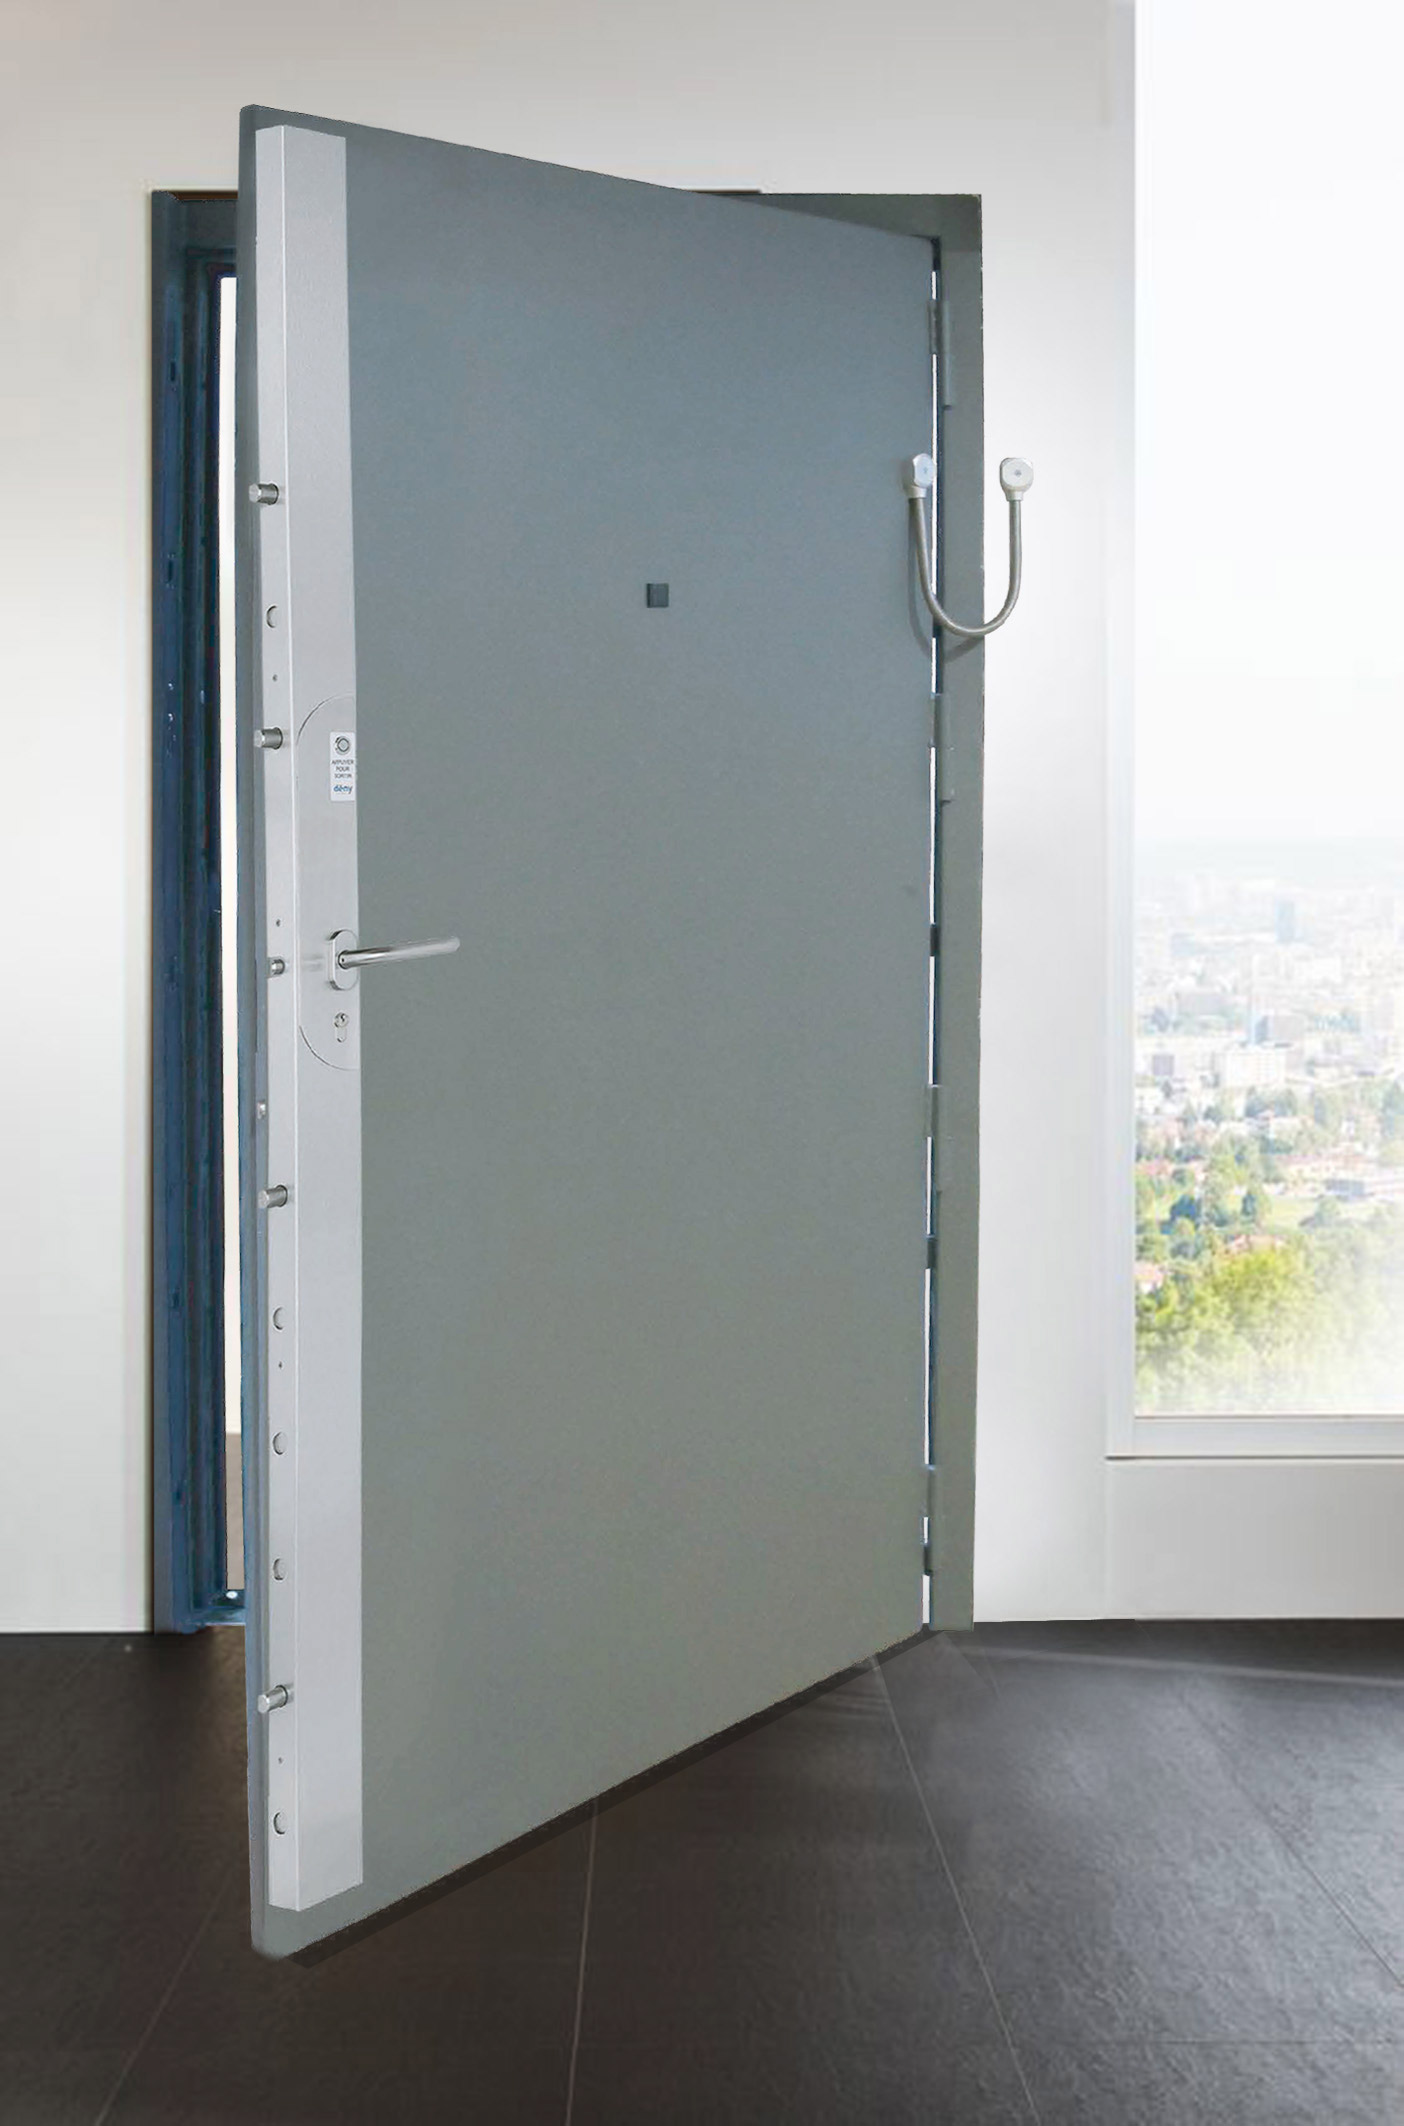 Toltec Secure - tôlerie industrielle au service de la sécurité - Porte SECURE DOOR SD4 est certifiée CR4 selon la norme Européenne EN 1627-1630.